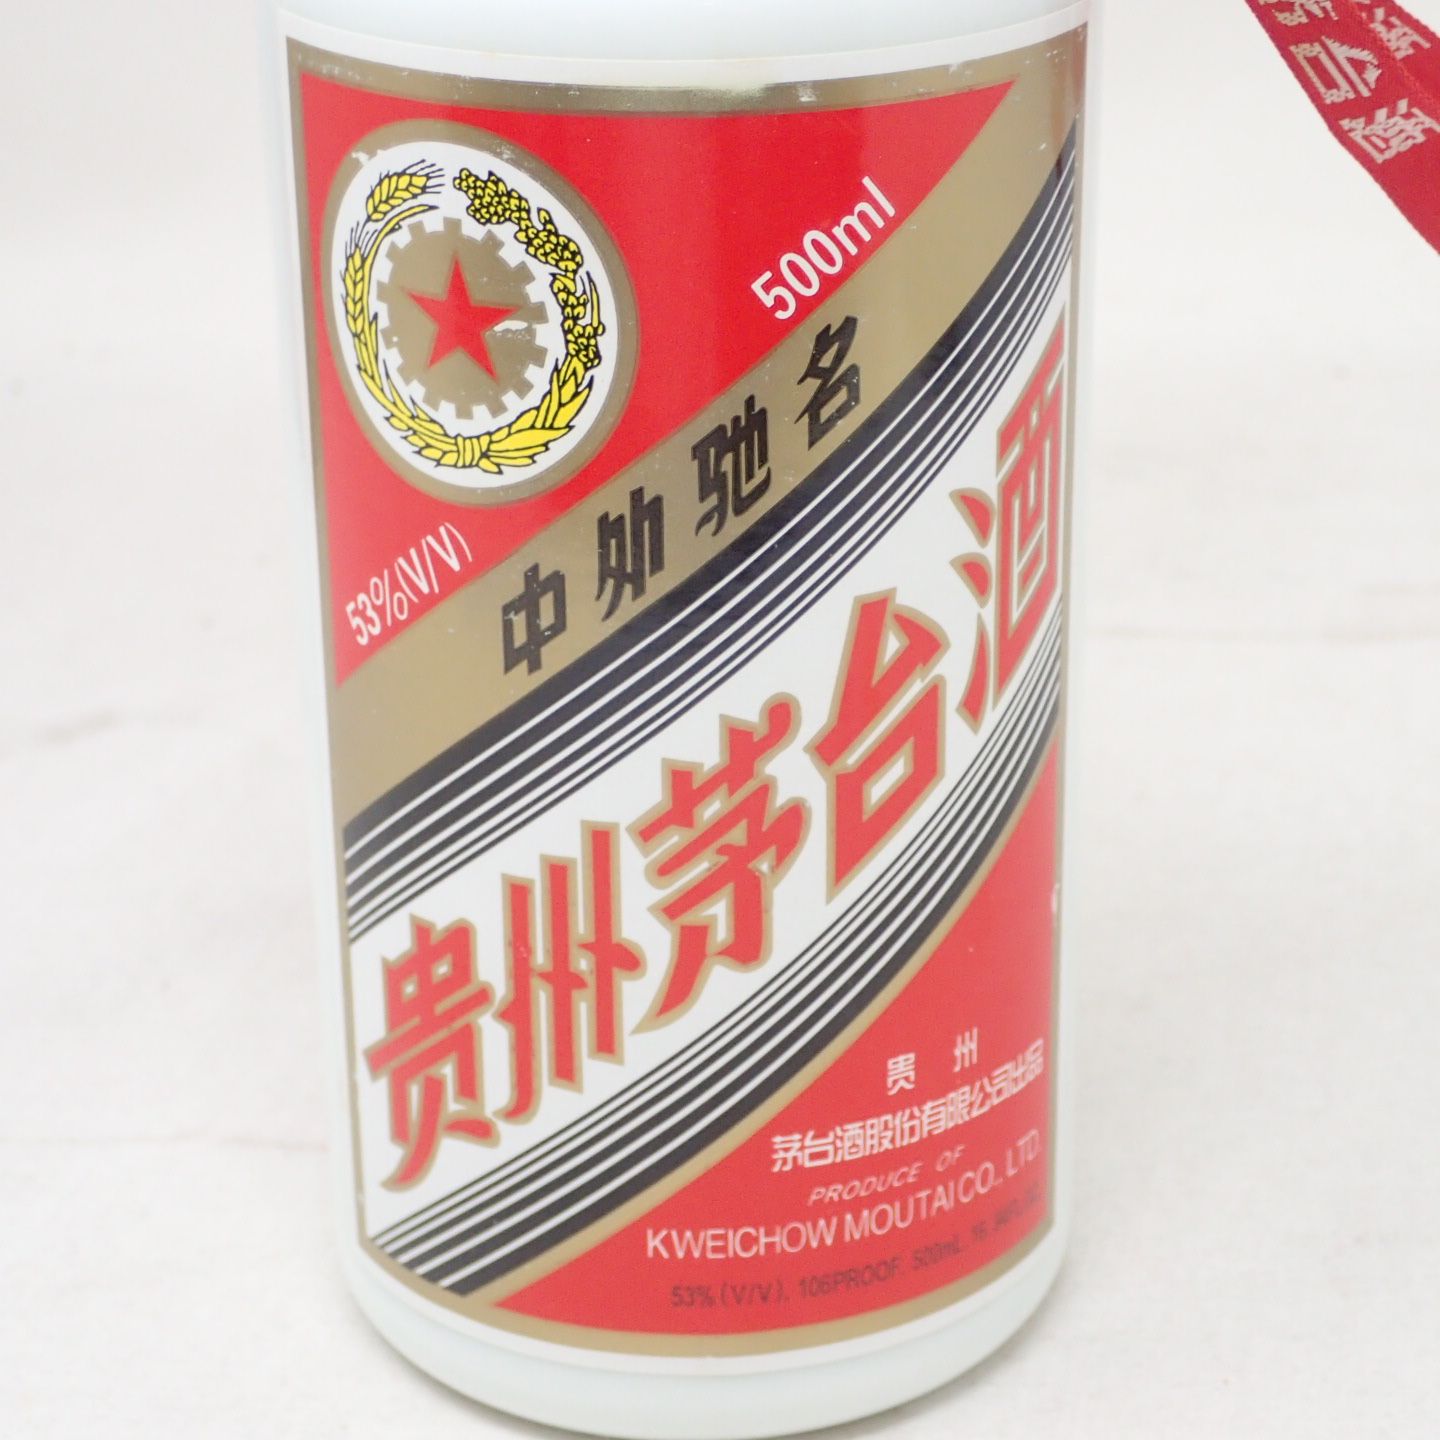 貴州茅台酒 五星ラベル 2006年 500ml 53% マオタイ酒【O1】 - メルカリ